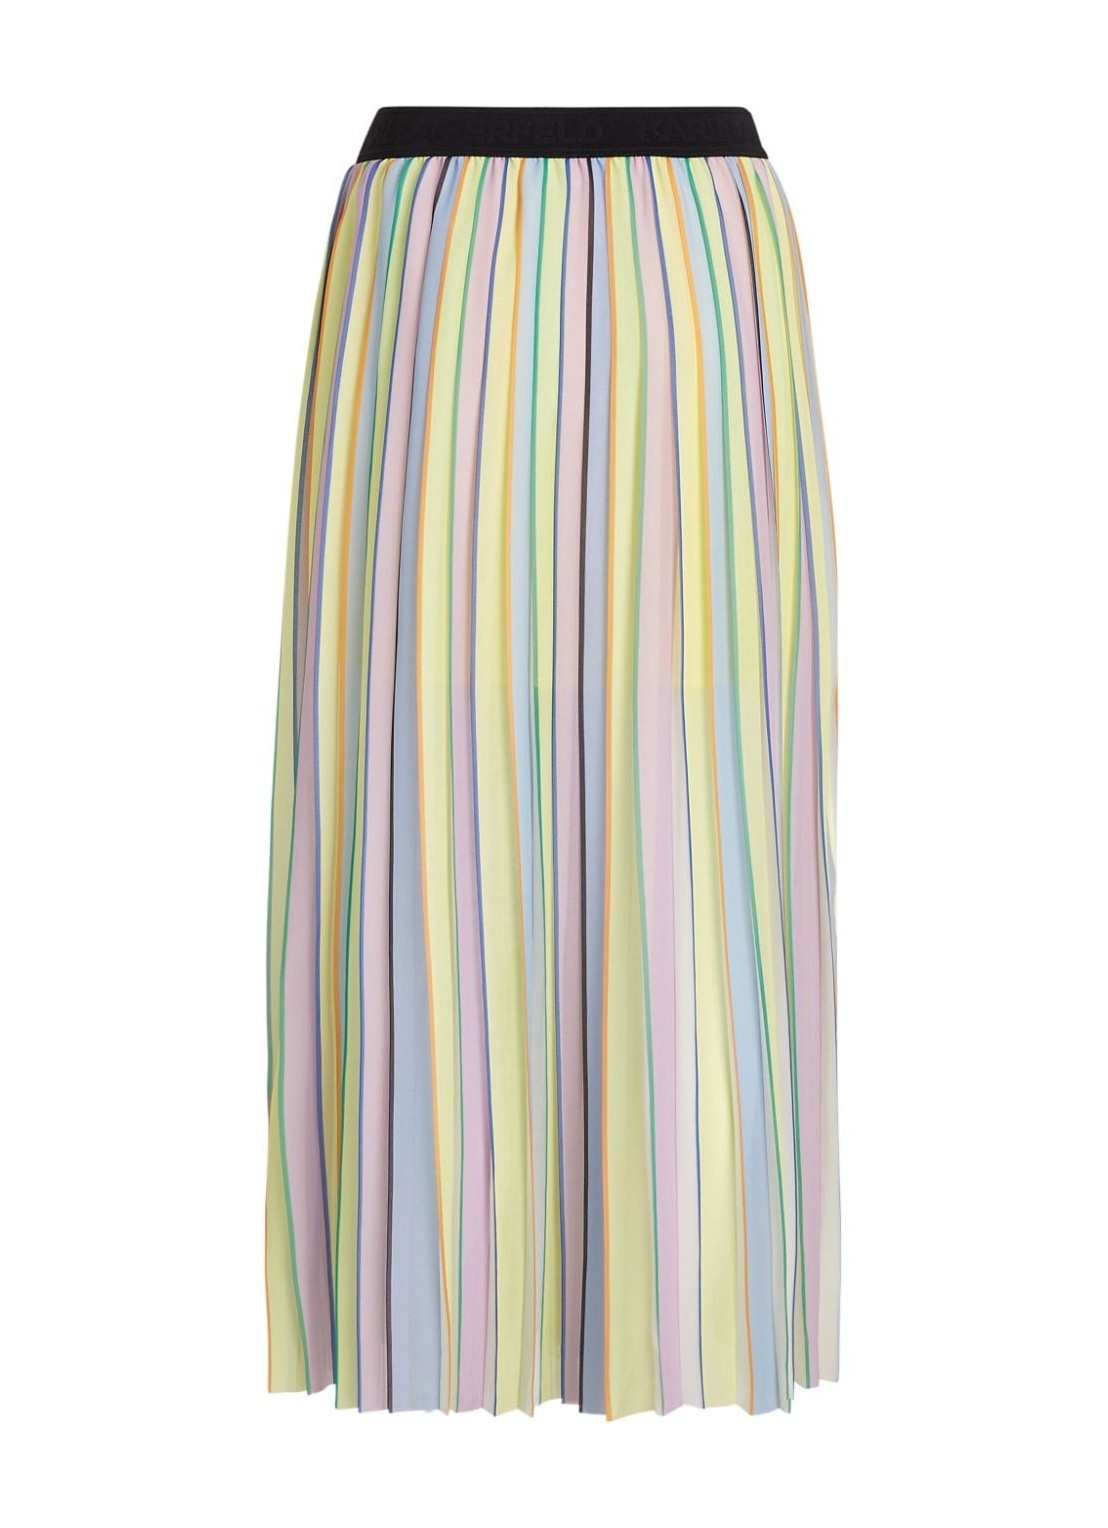 Falda karl lagerfeld skirt womanstripe pleated skirt - 241w1202 r54 talla 44
 